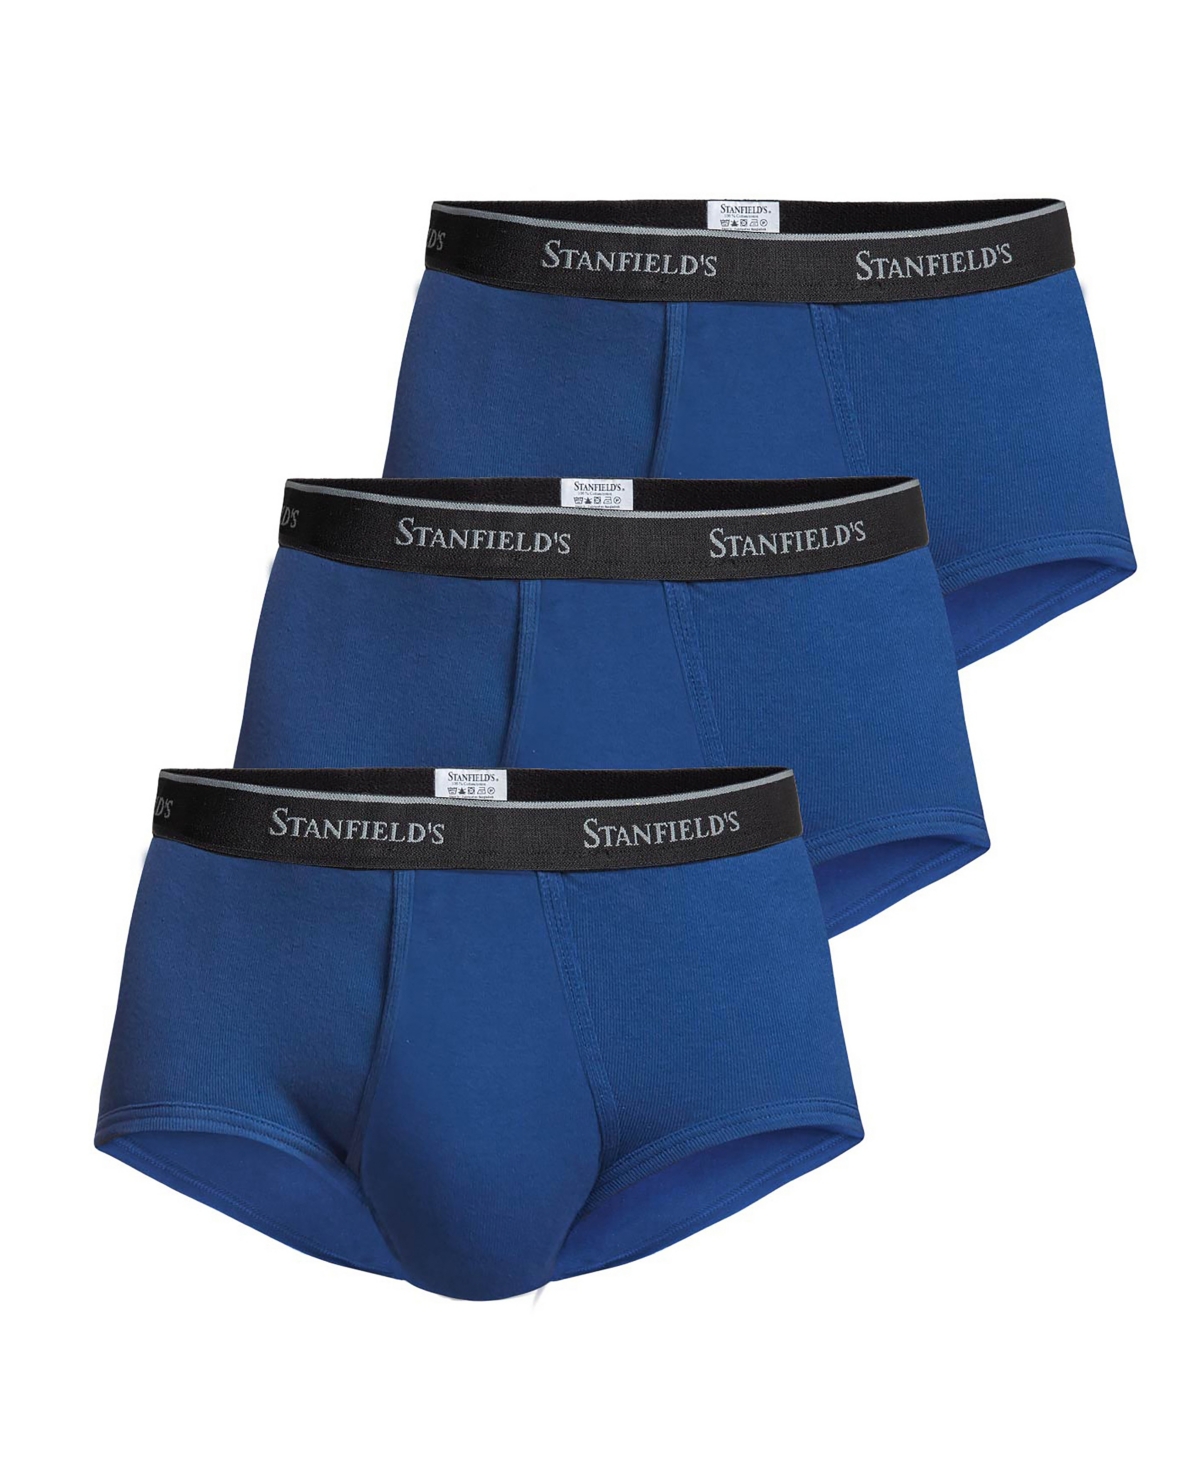 Stanfield's Premium Cotton Men's 3 Pack Brief Underwear In Reflex Blue